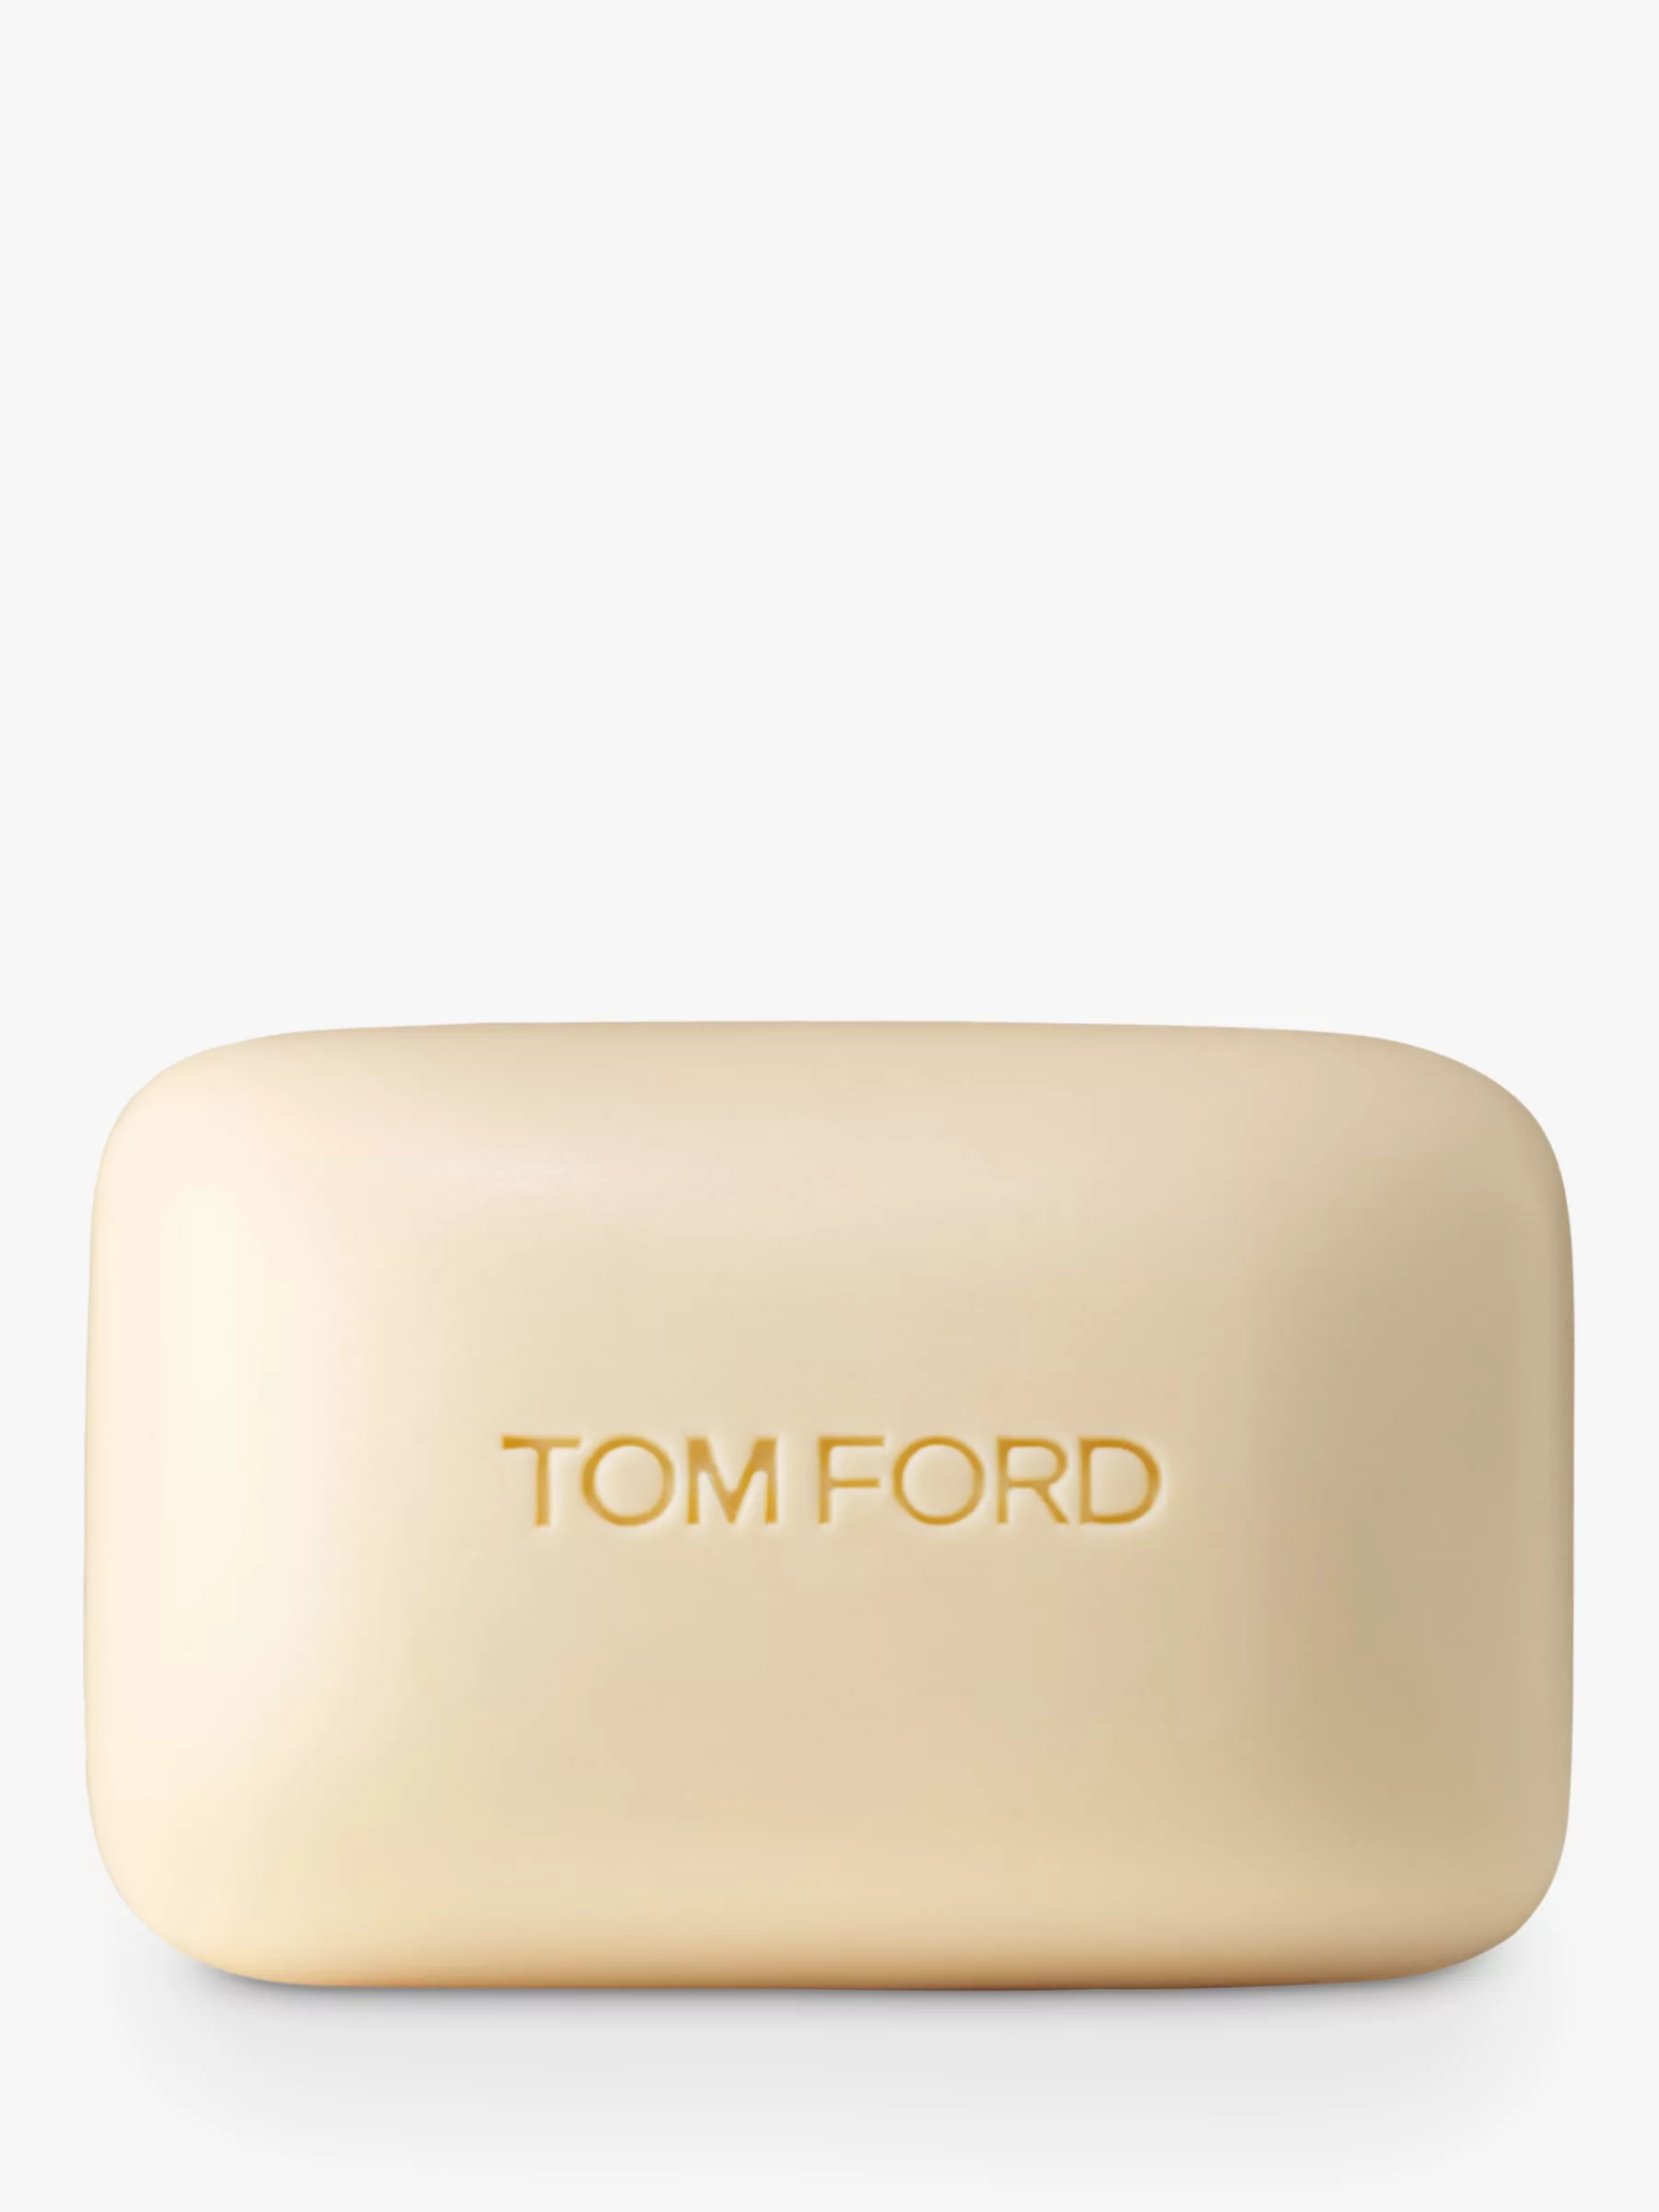 Tom Ford Neroli Portofino Bath Soap